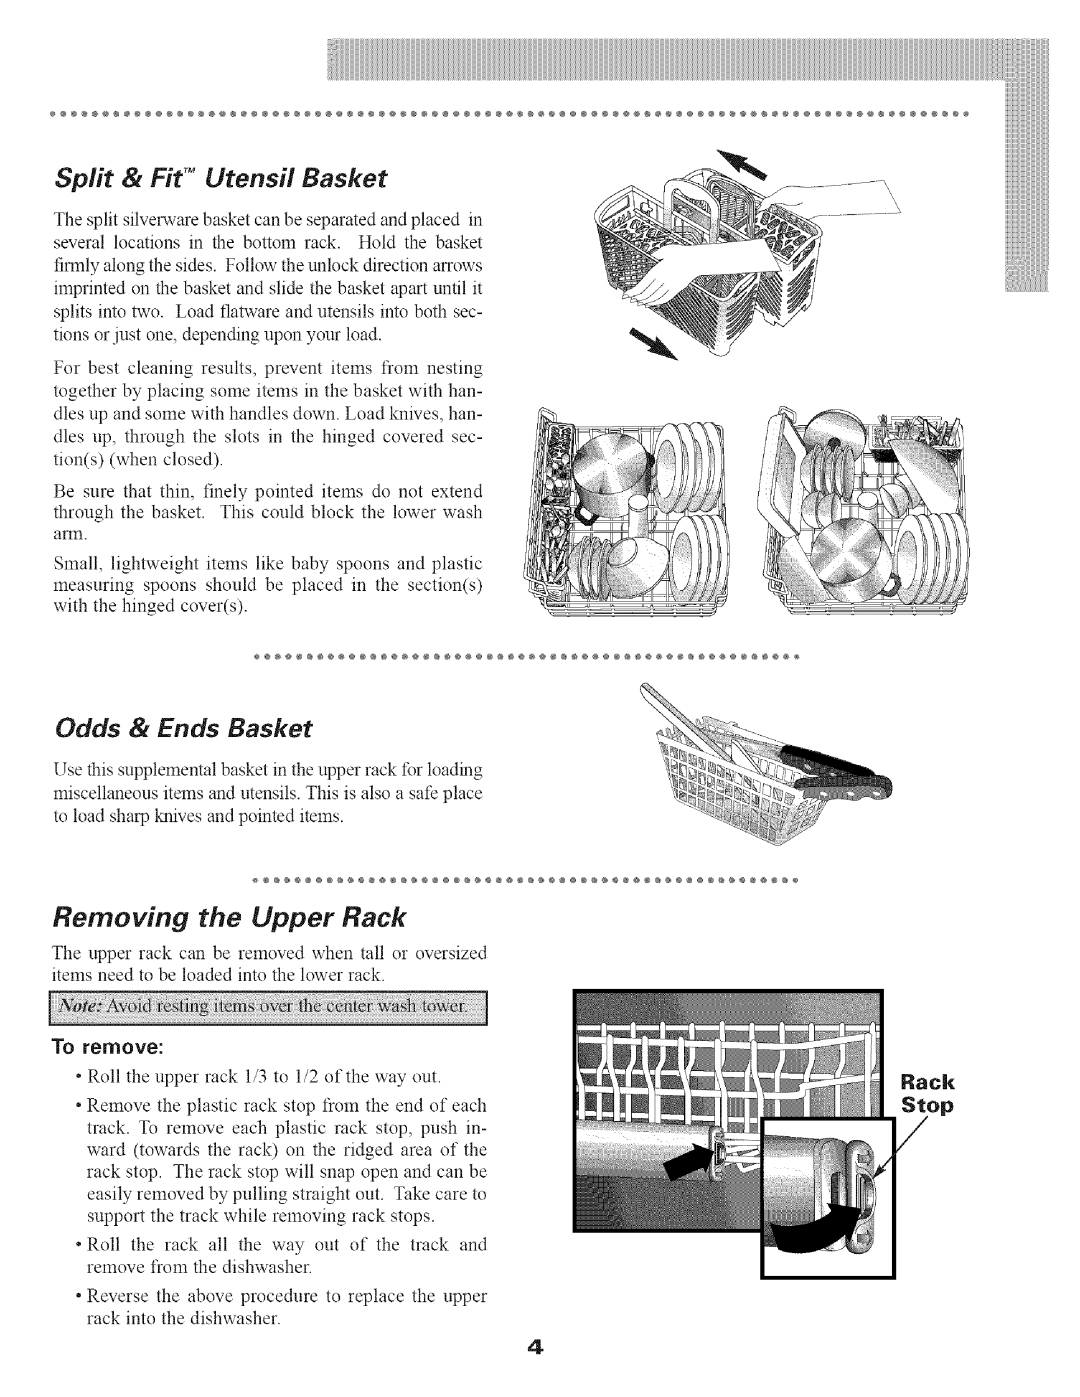 Maytag MDB9100 manual Split & Fit TM Utensil Basket, Removing the Upper Rack, Odds & Ends Basket 